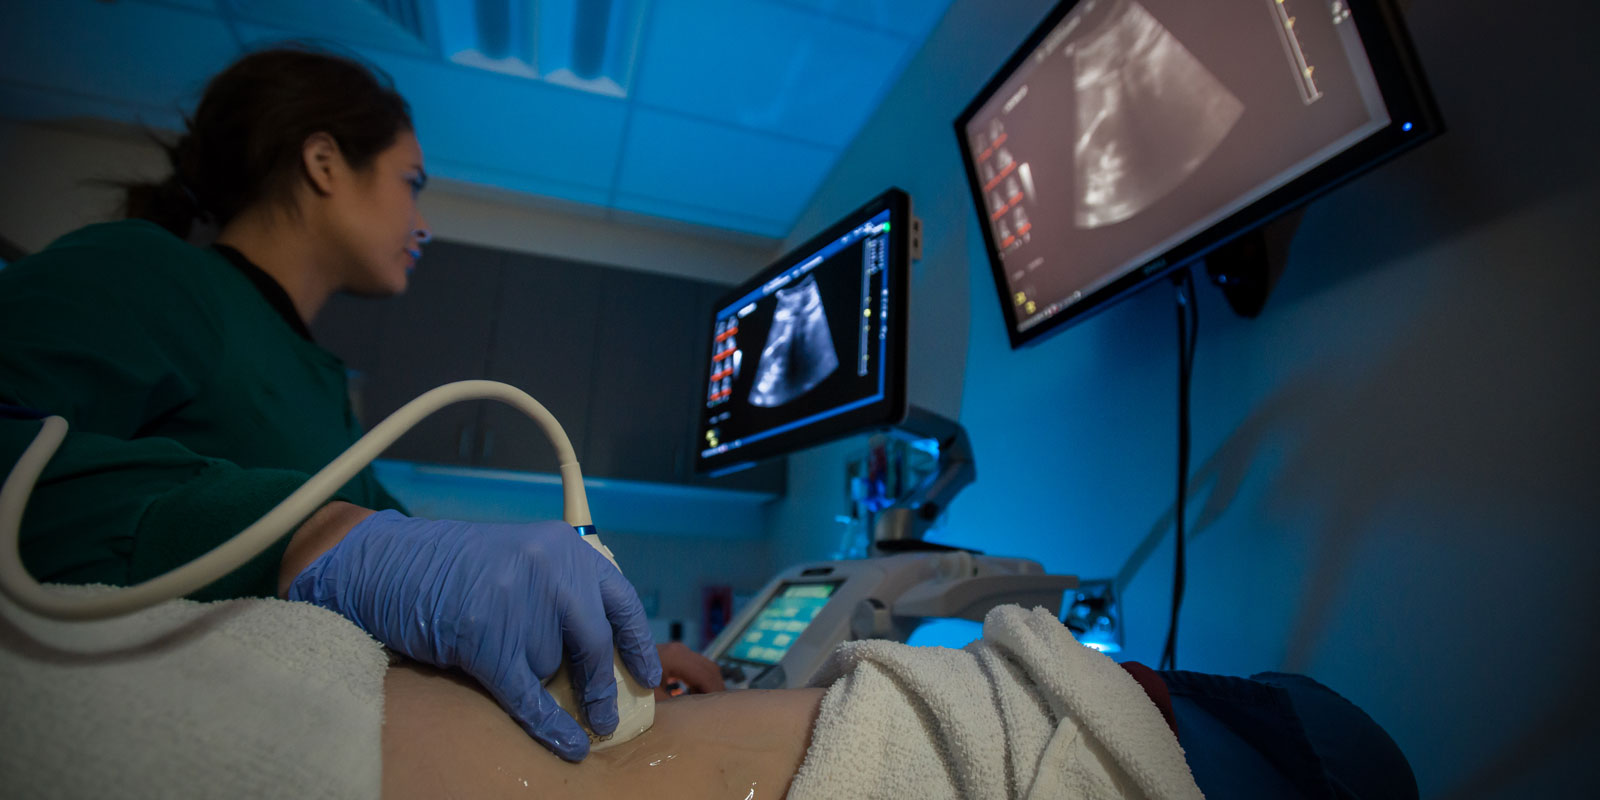 A student technician using an ultrasound